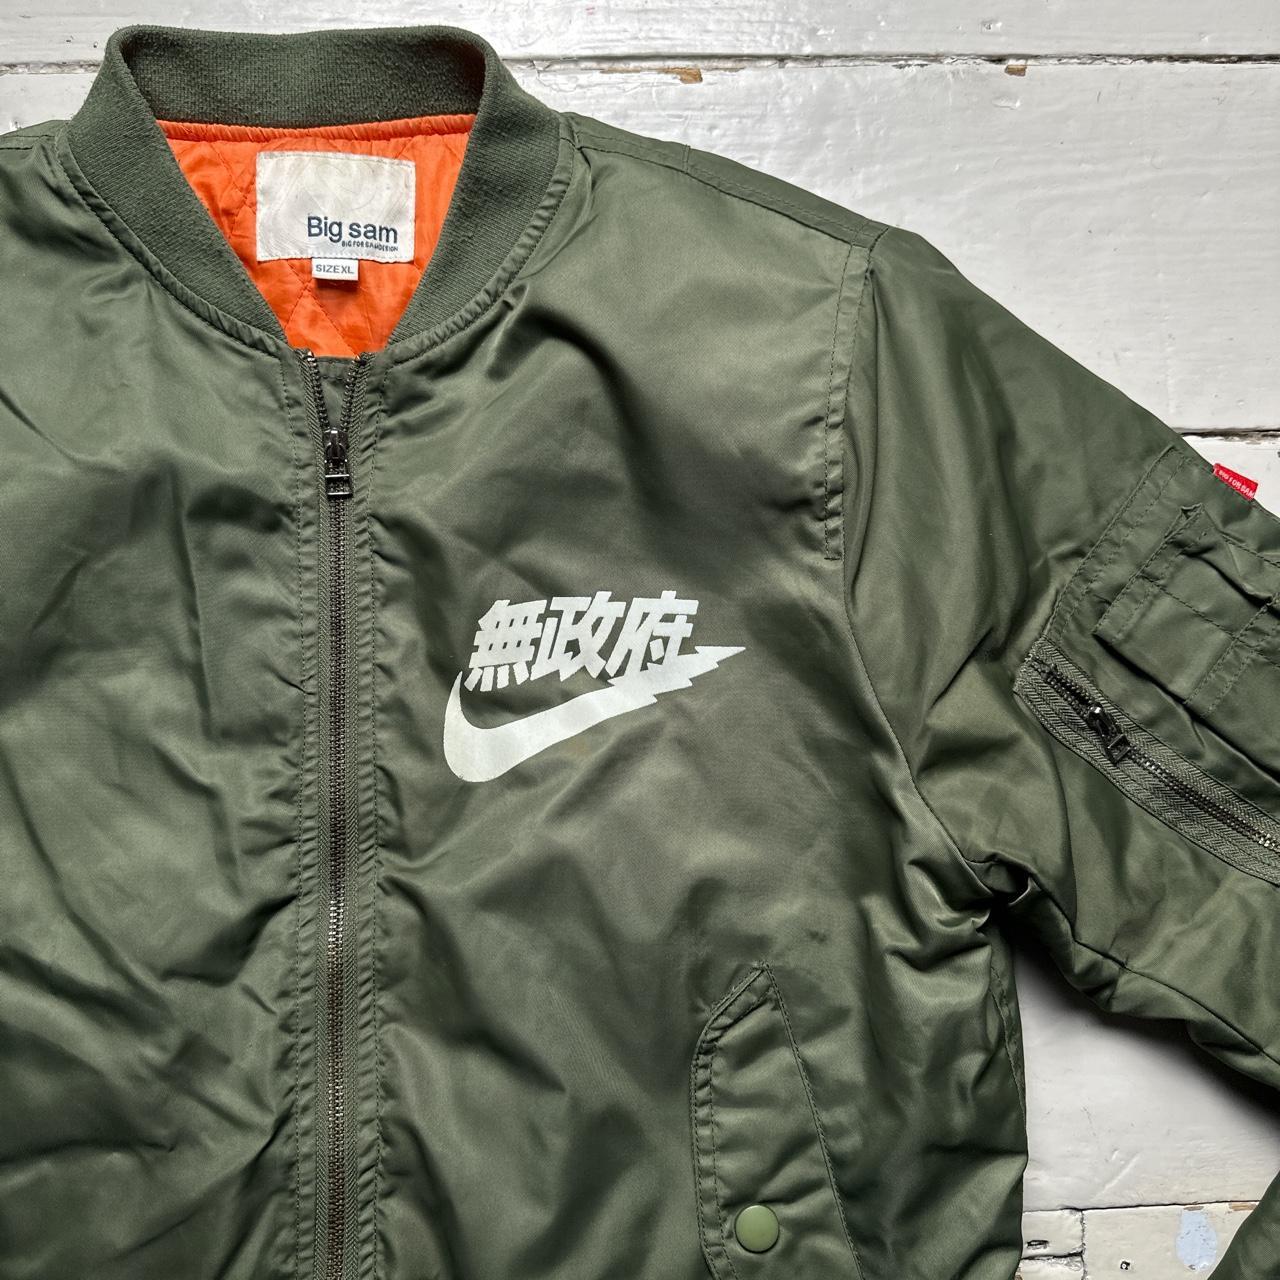 Nike Japanese Big Sam Bomber Jacket Khaki Green and White